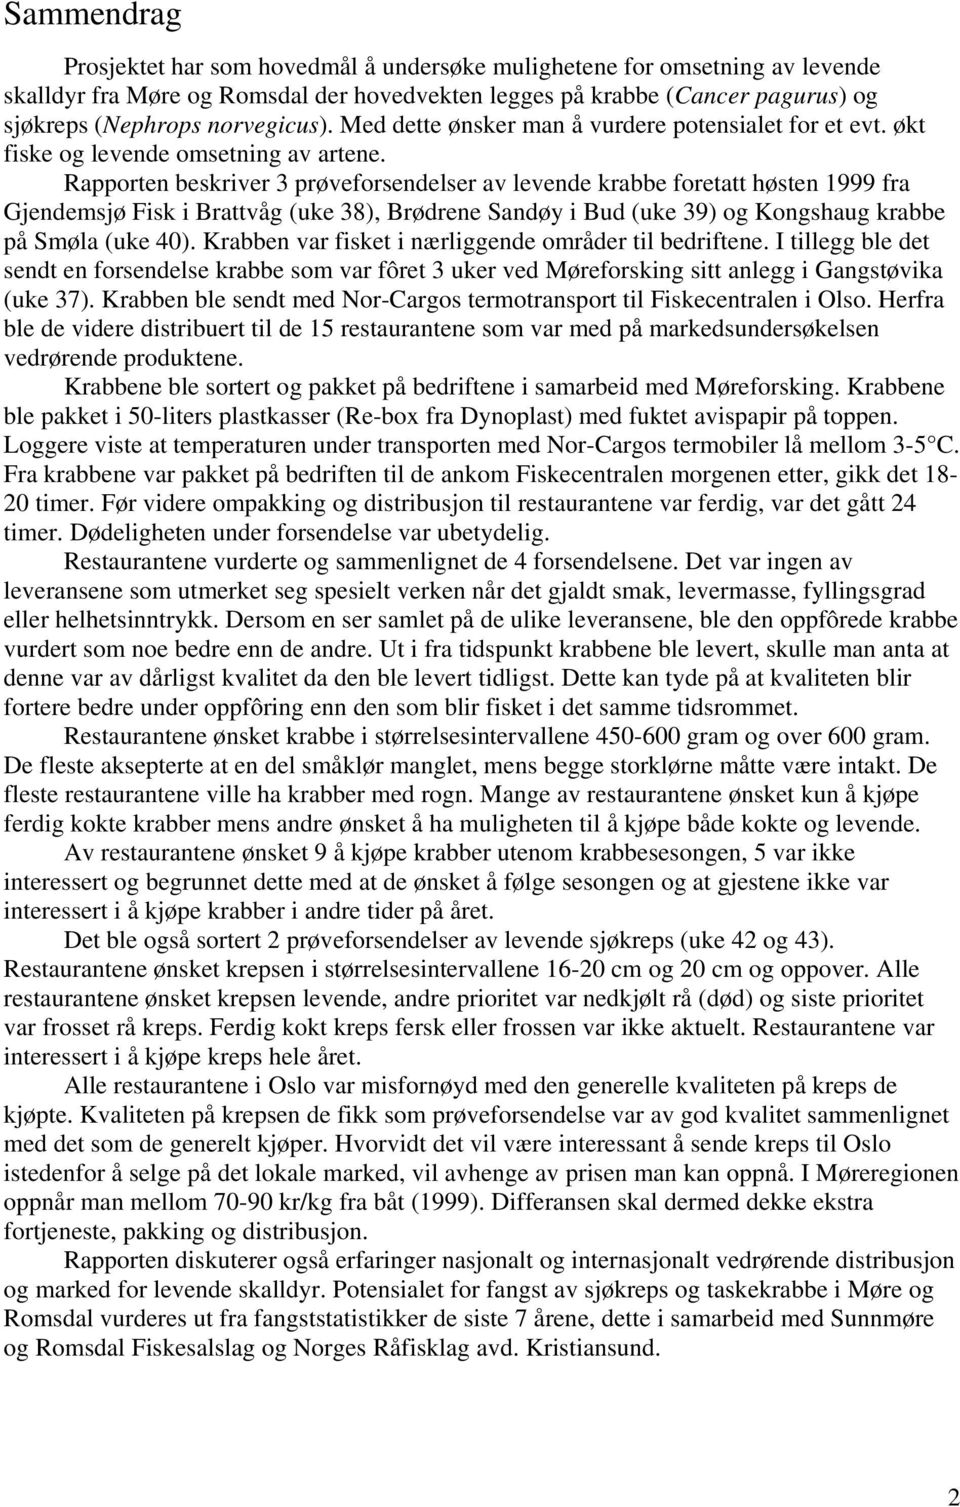 Rapporten beskriver 3 prøveforsendelser av levende krabbe foretatt høsten 1999 fra Gjendemsjø Fisk i Brattvåg (uke 38), Brødrene Sandøy i Bud (uke 39) og Kongshaug krabbe på Smøla (uke 40).